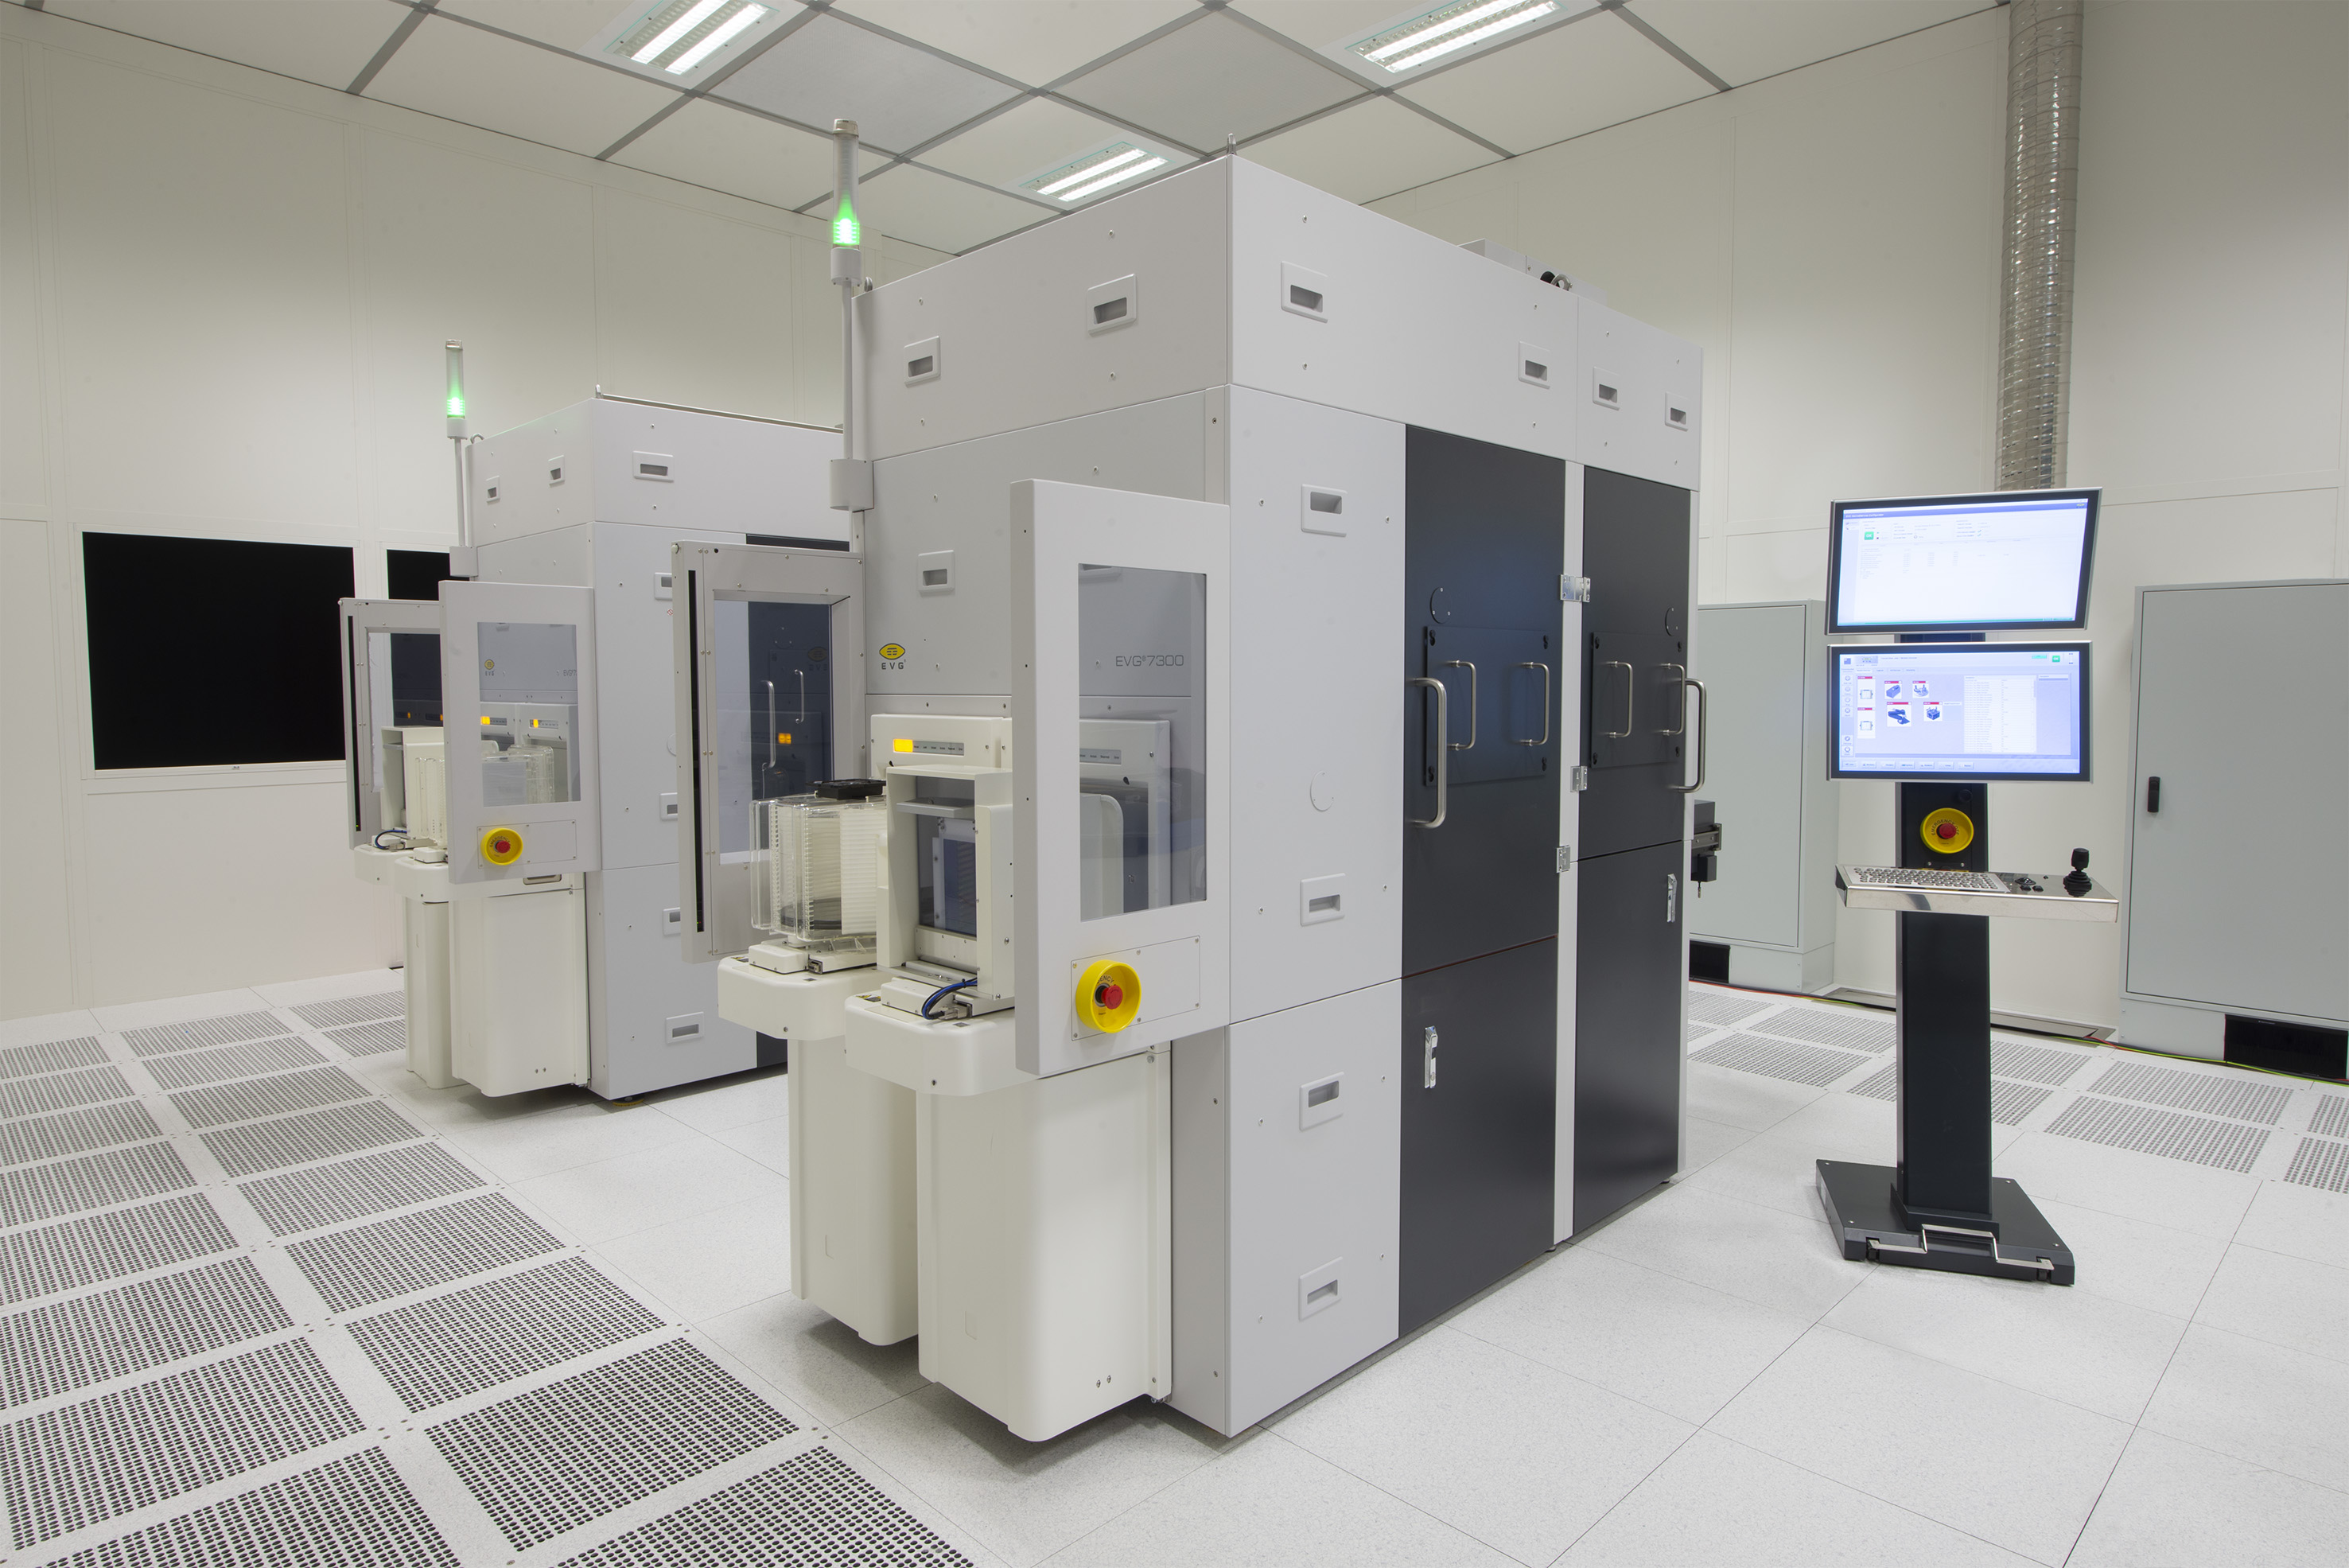 EVG®7300自动化SmartNIL®纳米压印与晶圆级光学系统在单个平台中结合了多种紫外线工艺技术，是一套先进的    多功能解决方案。